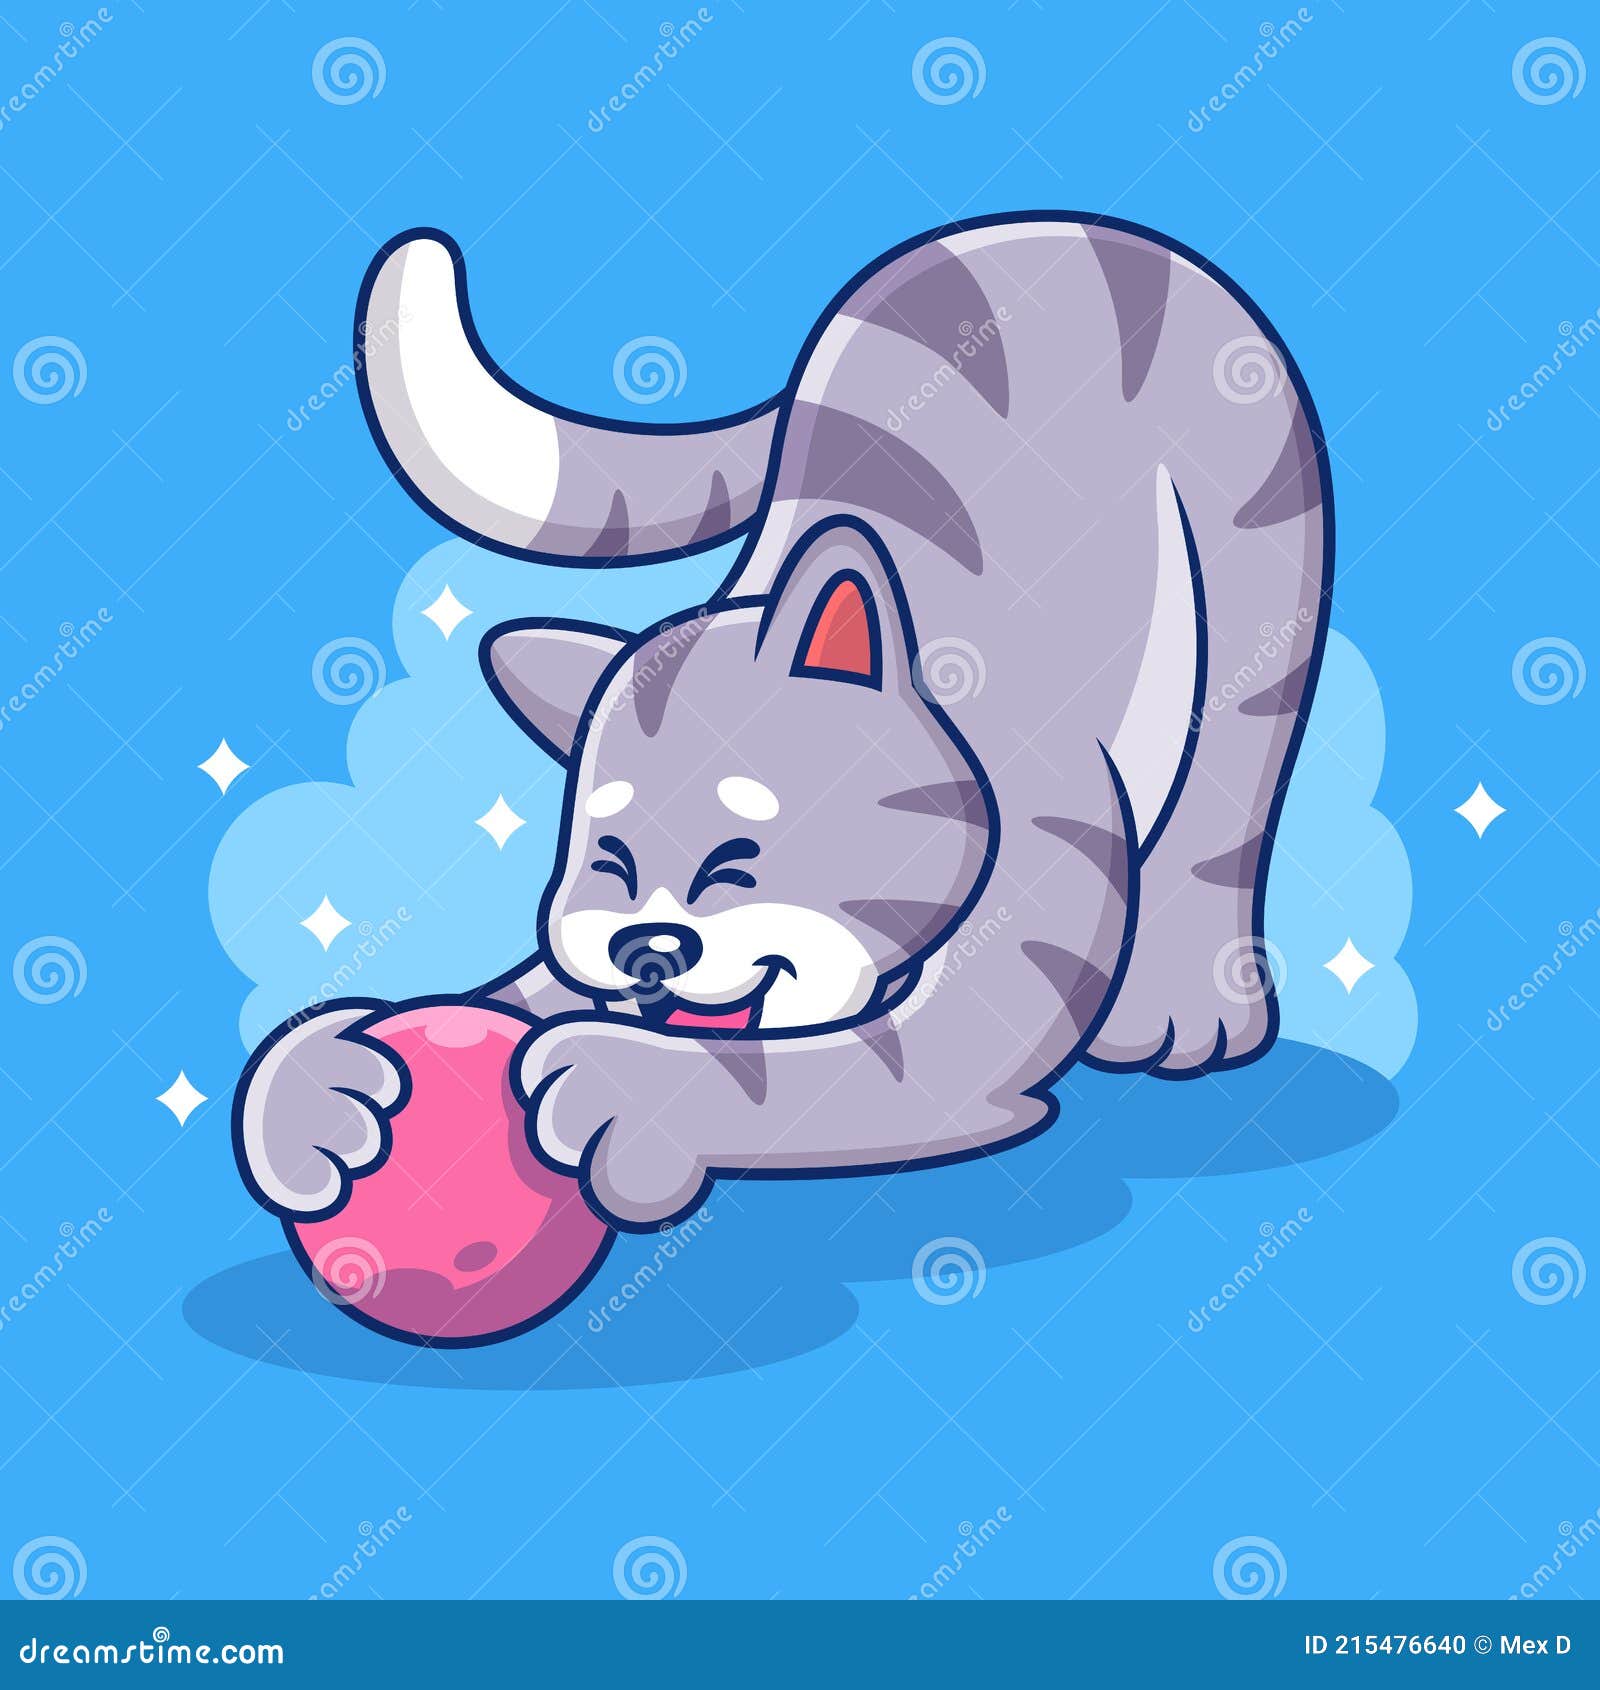 Premium Vector  Cute cat icon vector illustration